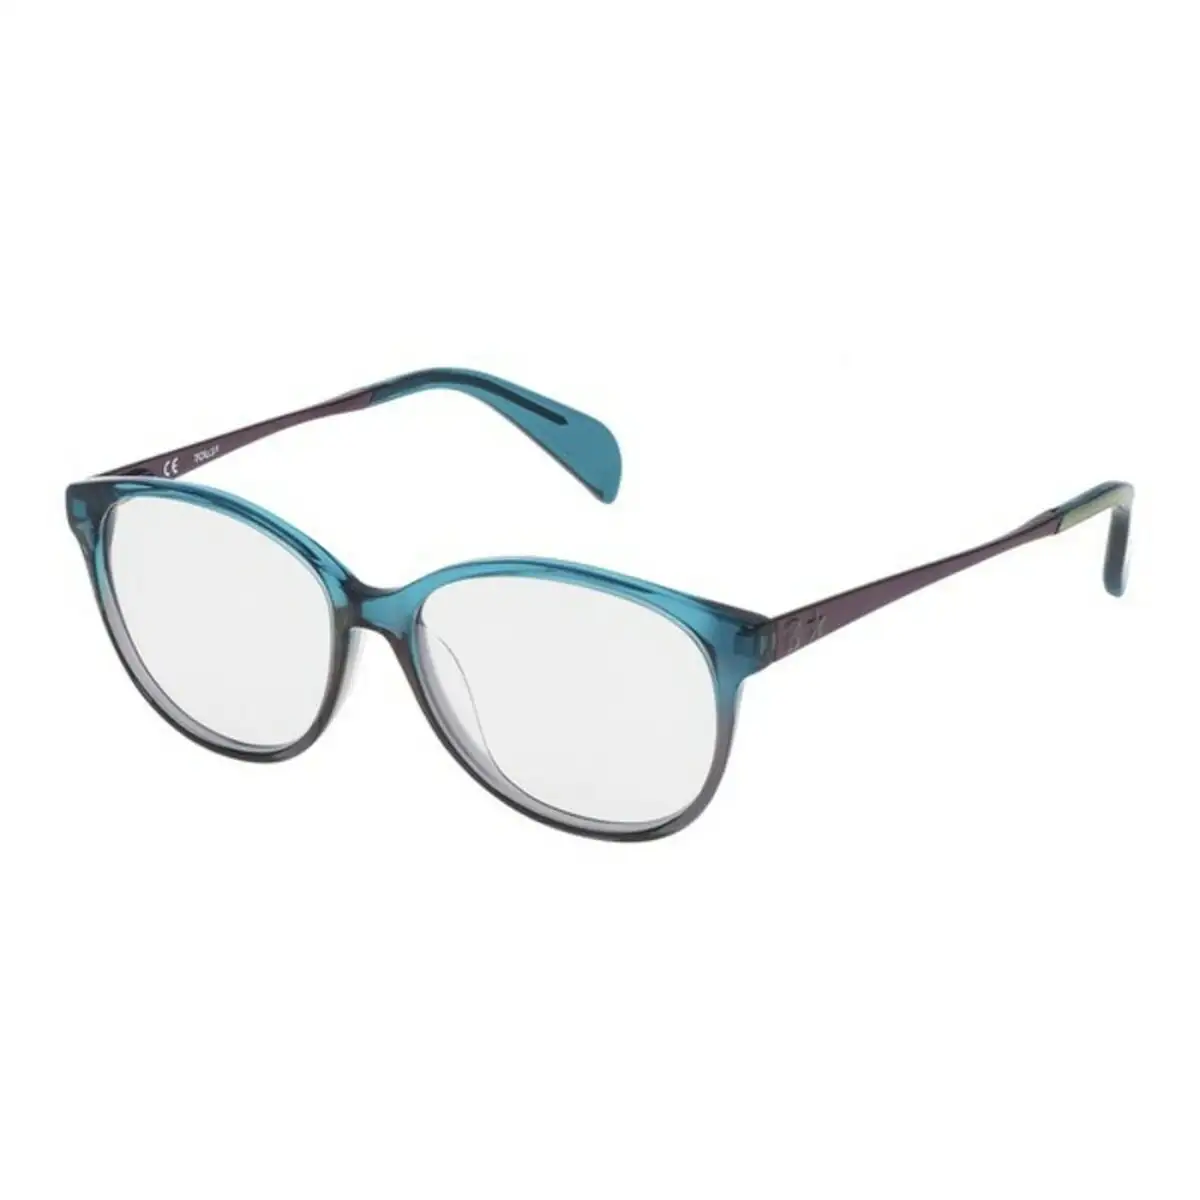 Monture de lunettes femme tous vto928520anp 52 mm bleu o 52 mm _1864. DIAYTAR SENEGAL - Votre Destination pour un Shopping Réfléchi. Découvrez notre gamme variée et choisissez des produits qui correspondent à vos valeurs et à votre style de vie.